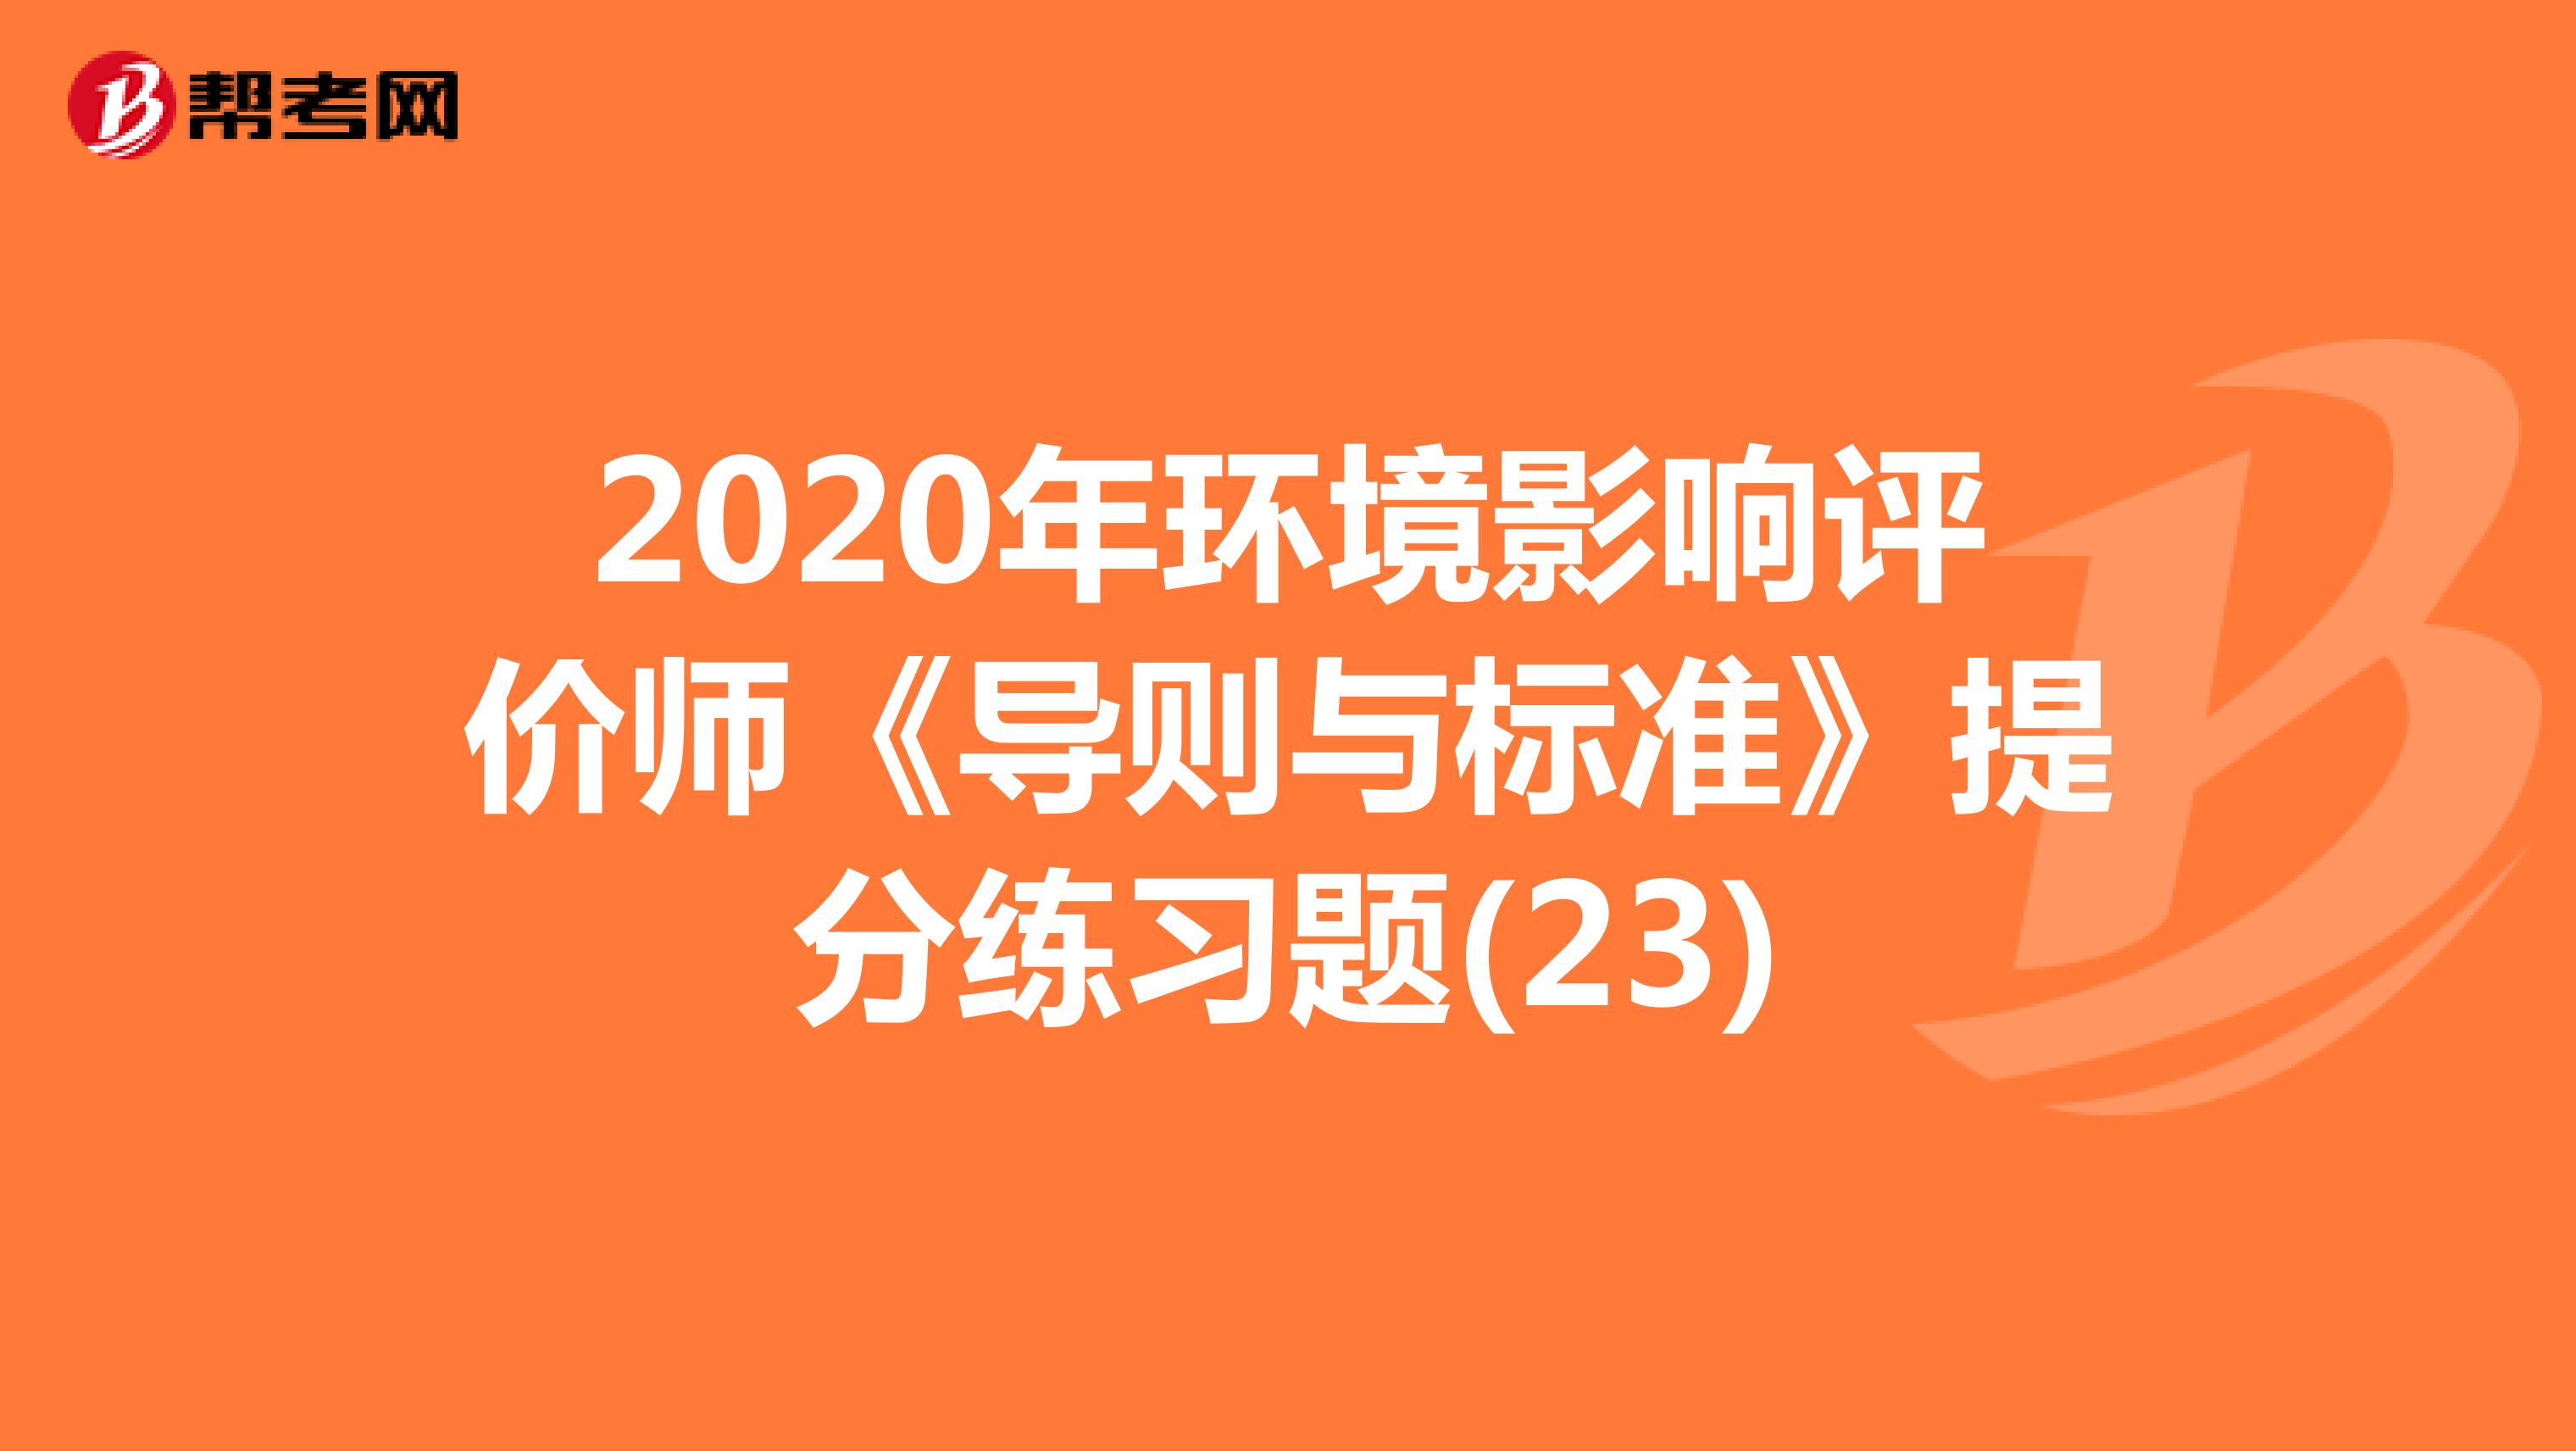 2020年环境影响评价师《导则与标准》提分练习题(23)